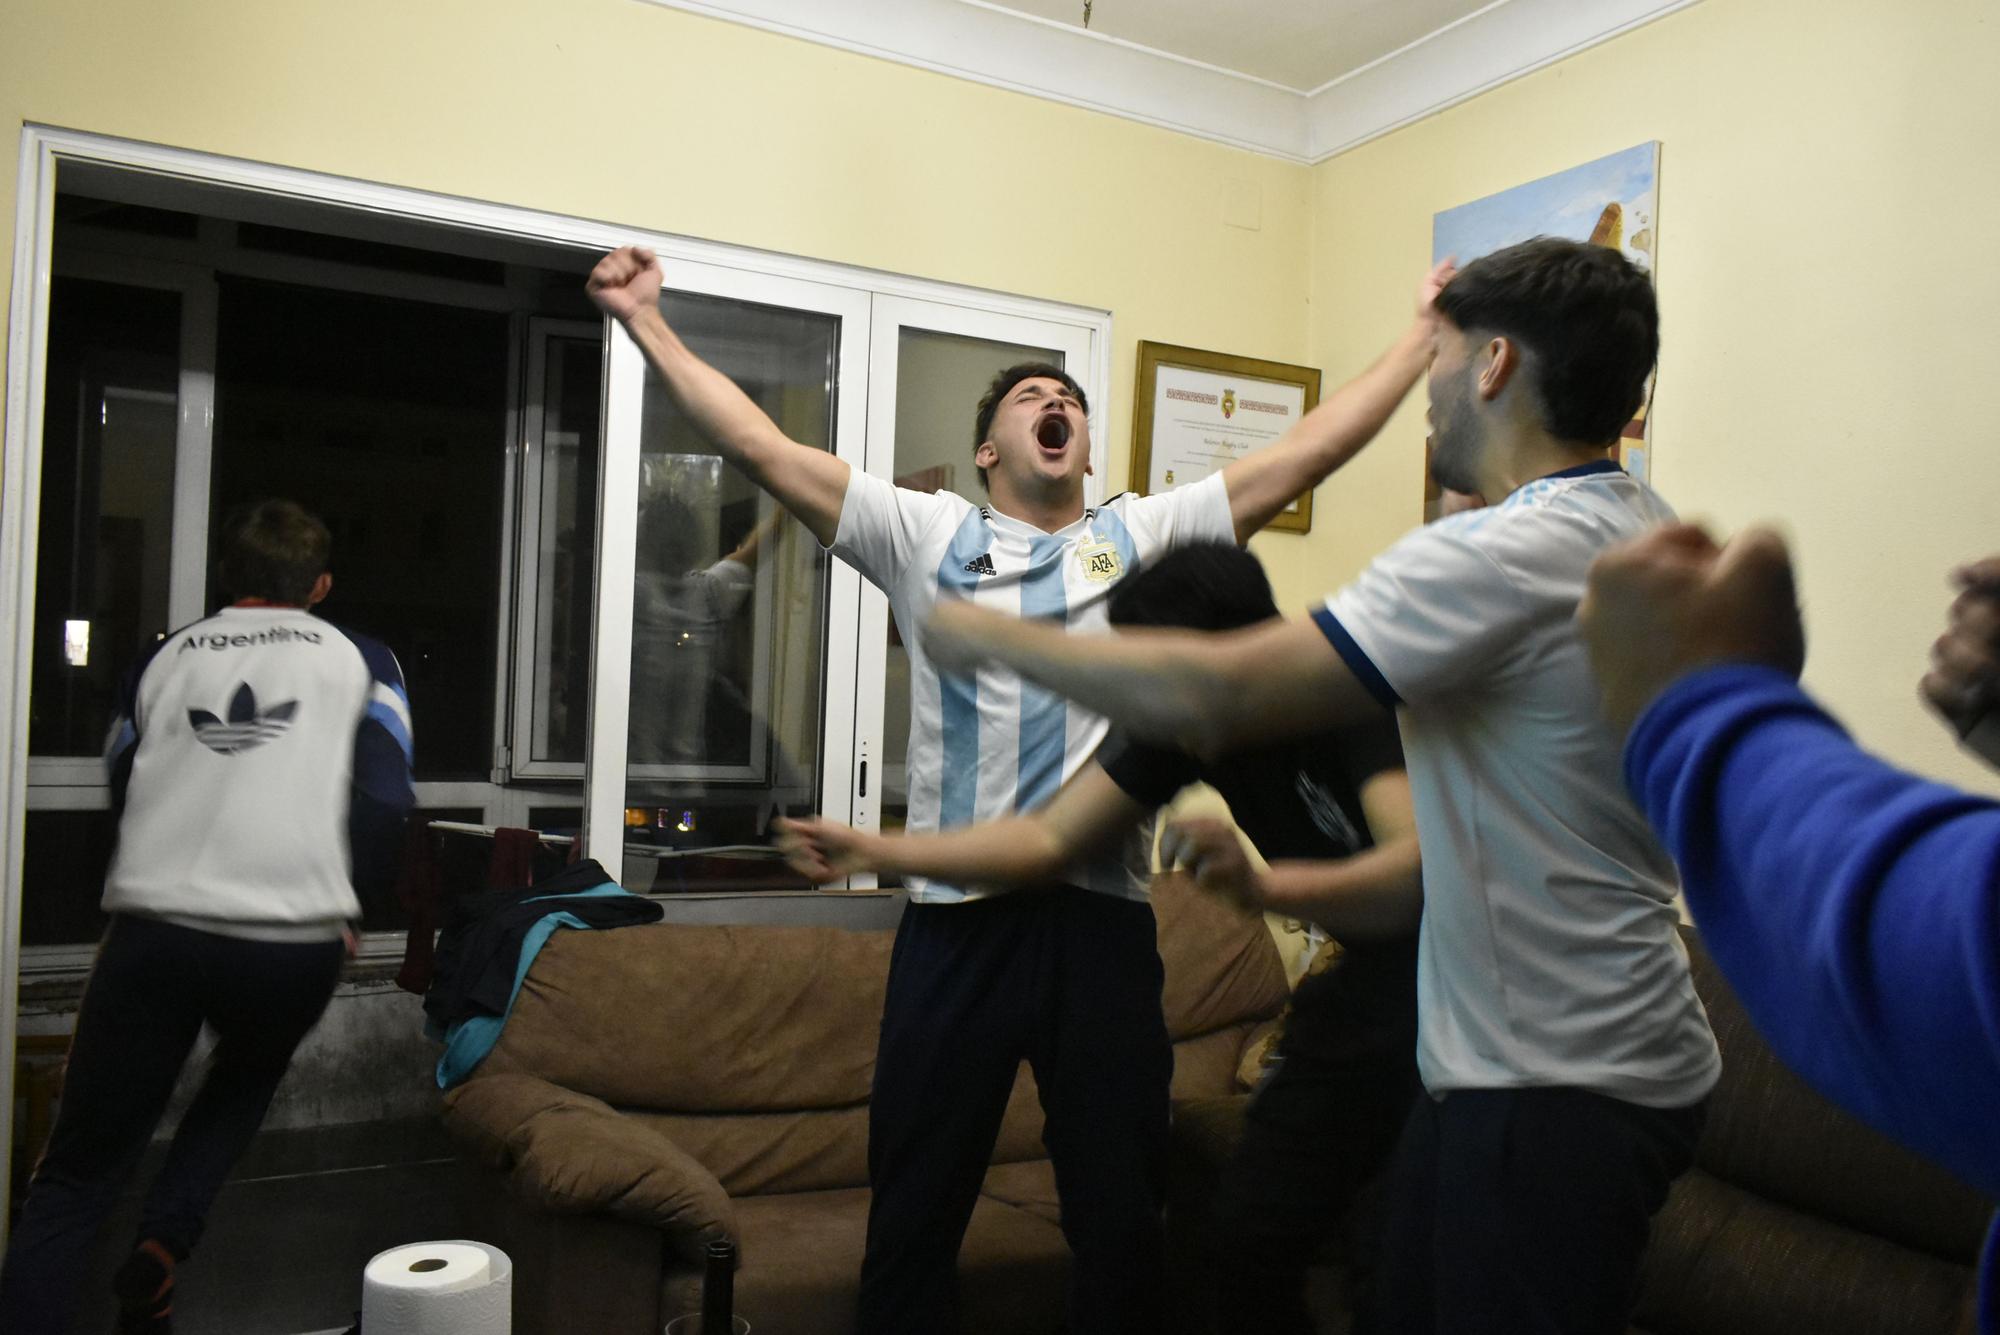 Así vivieron el triunfo de Argentina en el Mundial los argentinos del Pasek Belenos